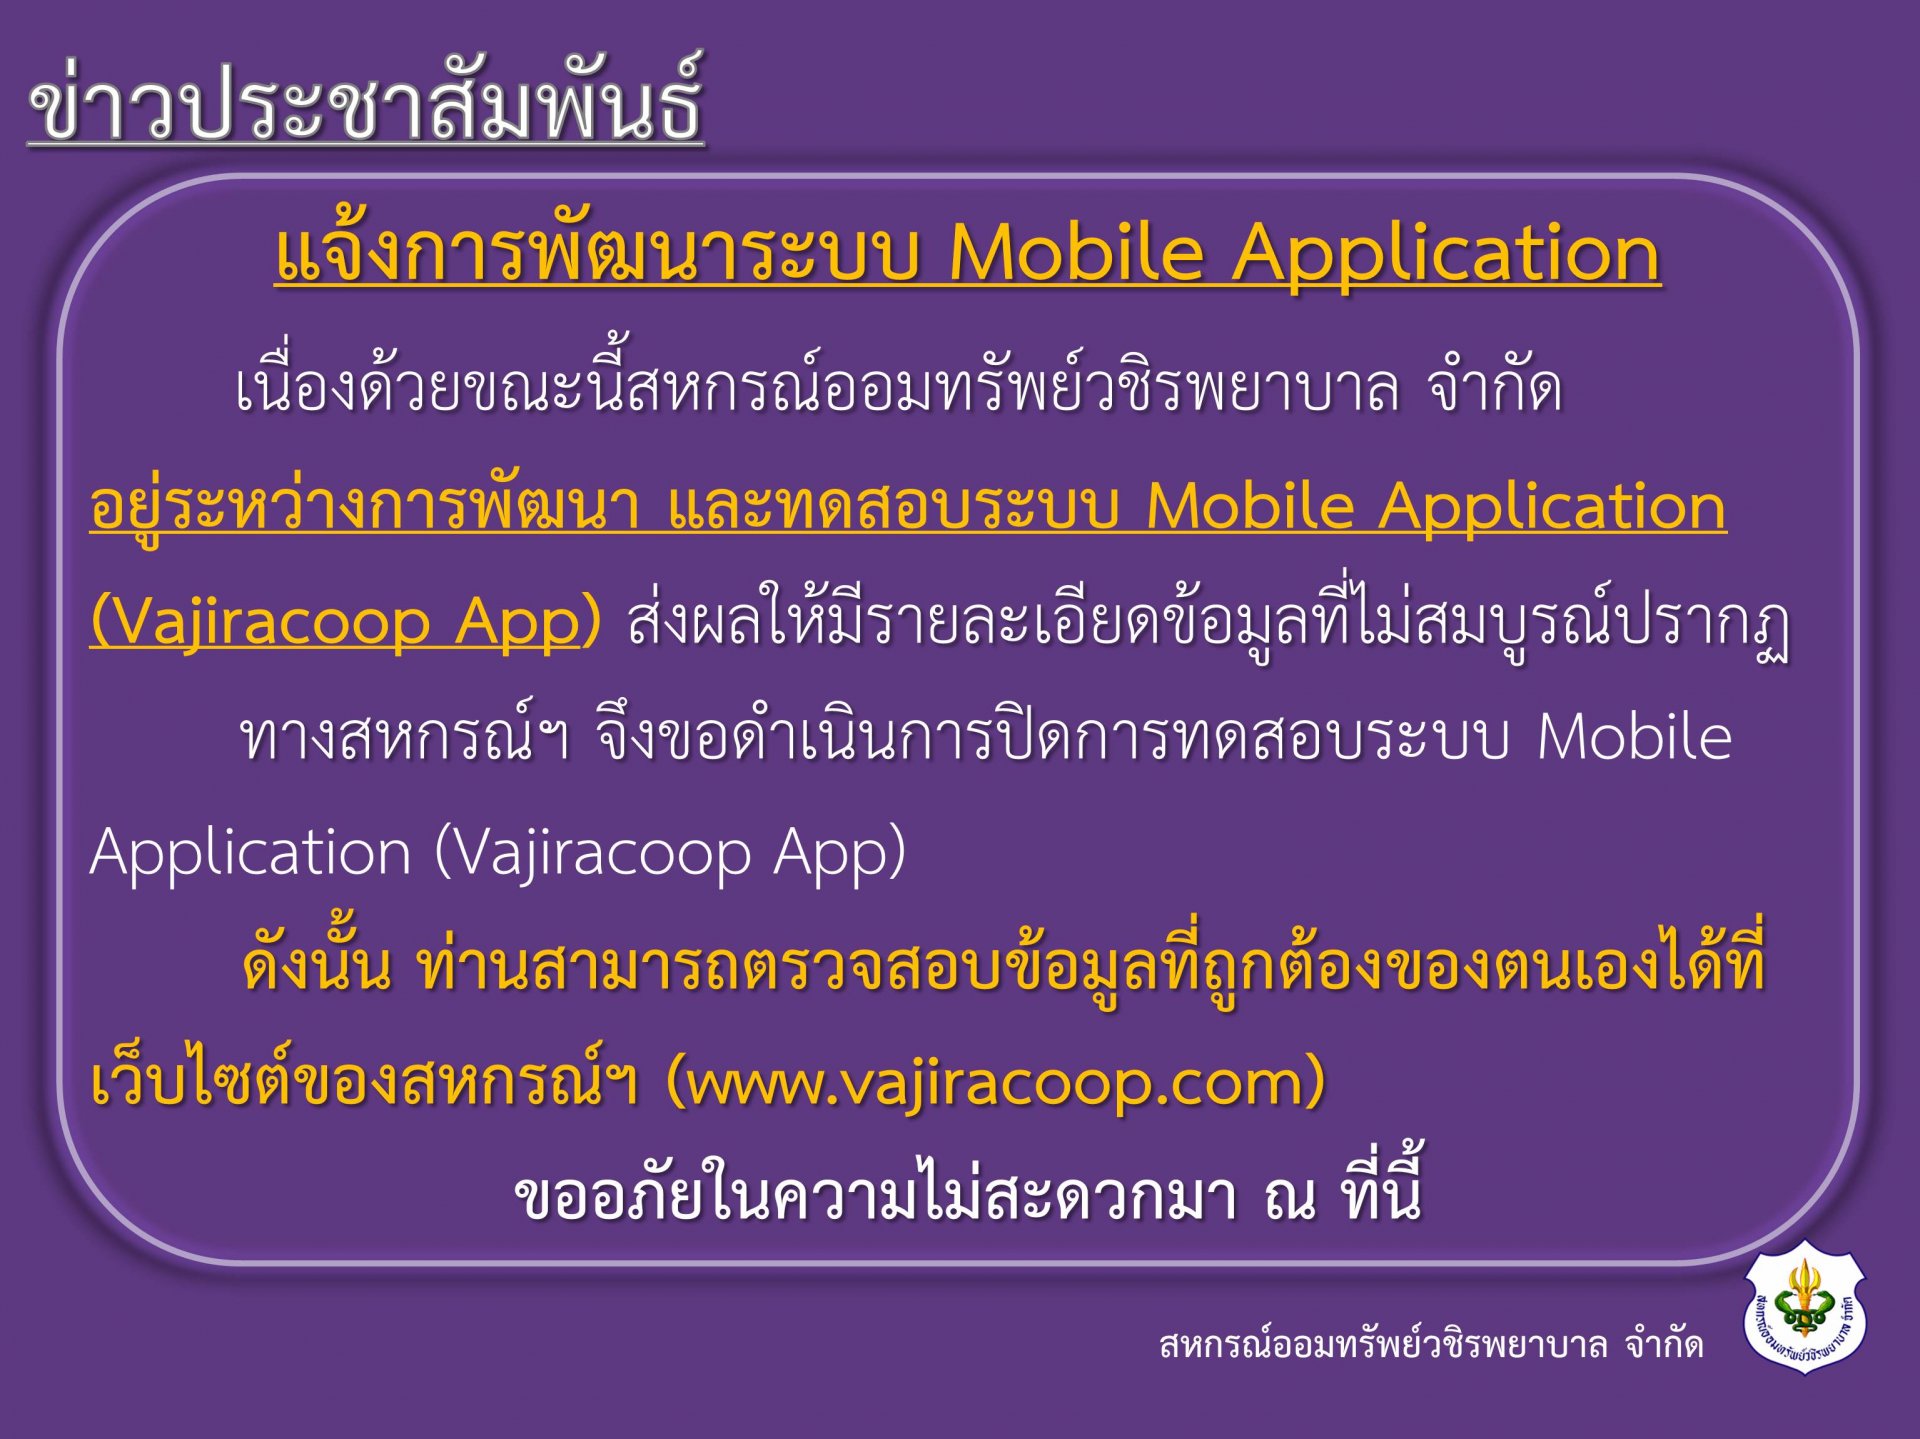 แจ้งการพัฒนาระบบ Mobile Application